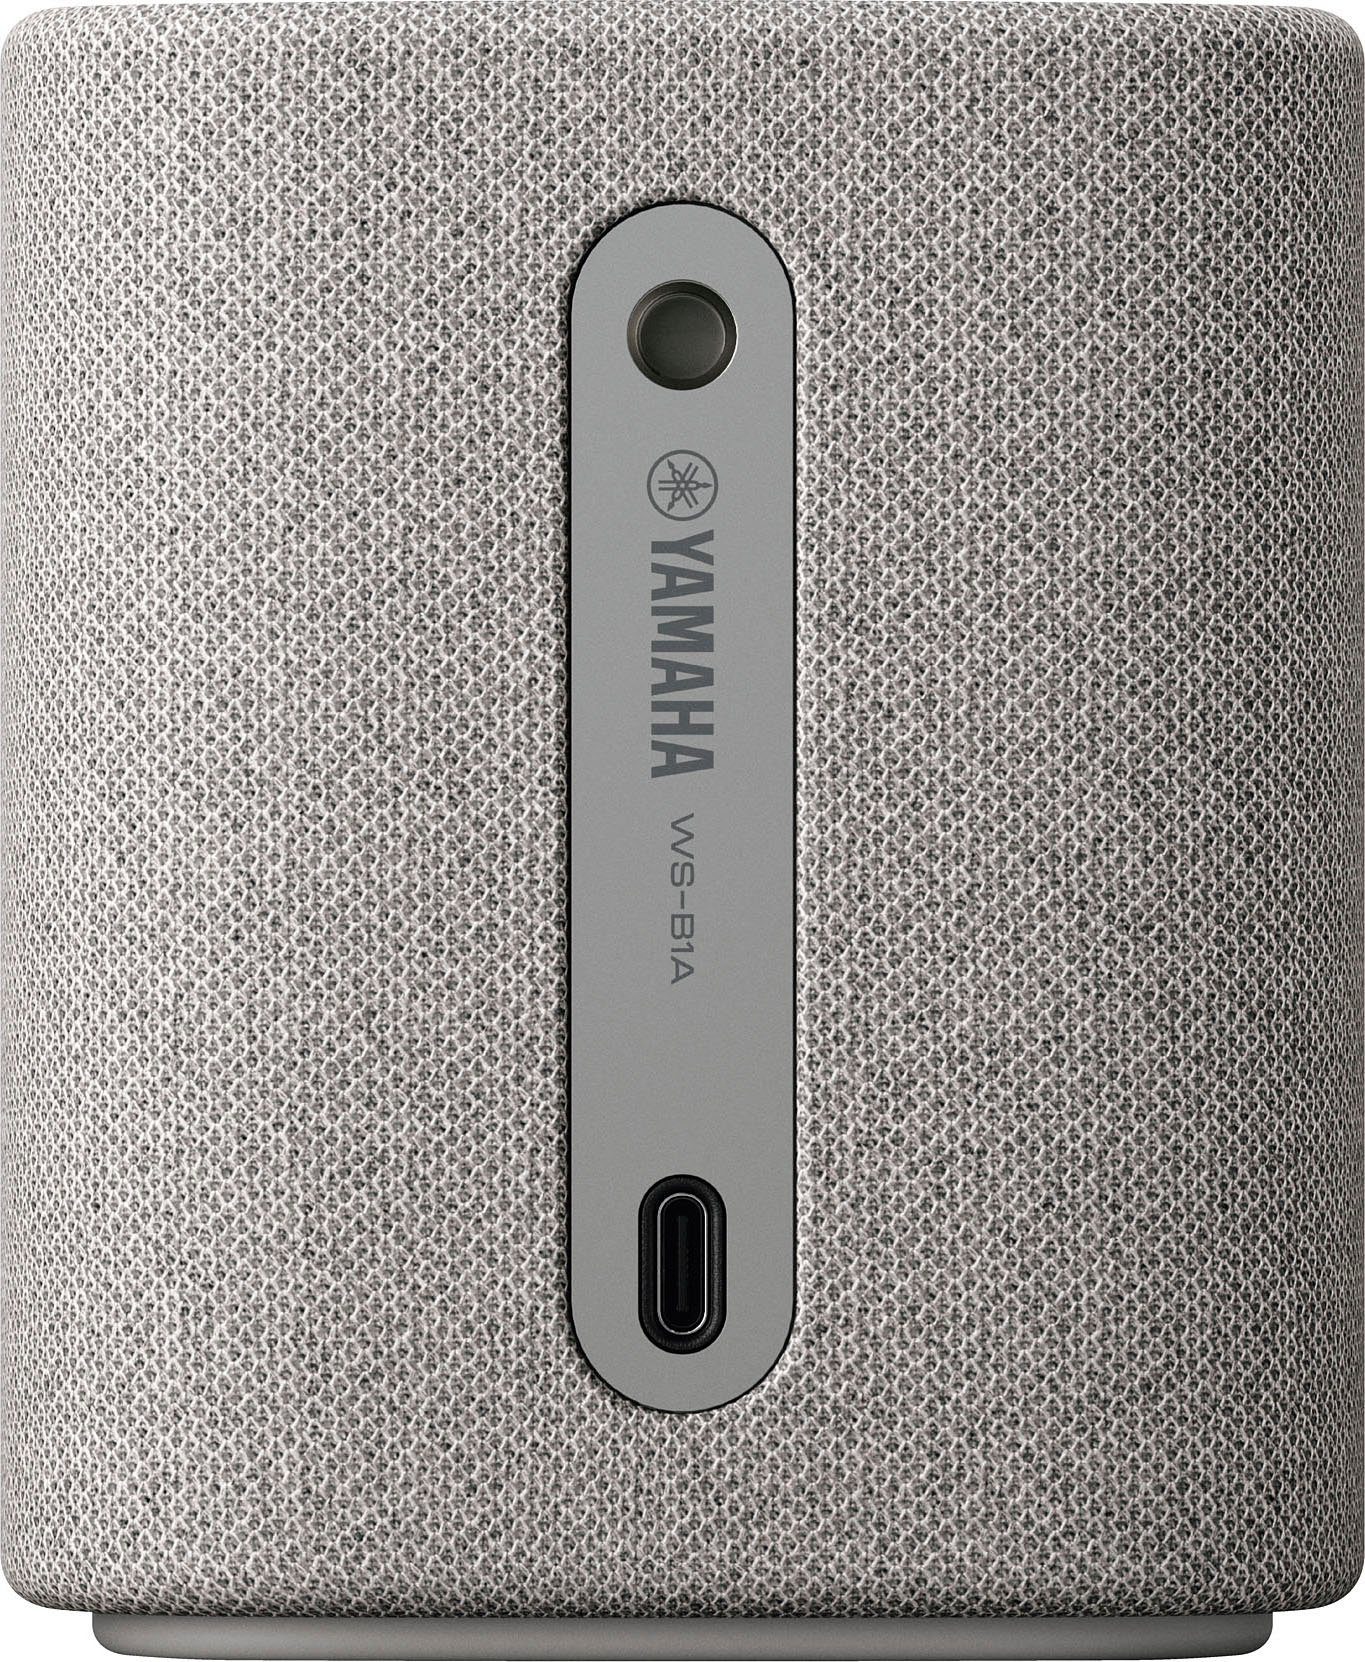 Yamaha WS-B1A Portable-Lautsprecher Bluetooth, Bluetooth, 10 W) (A2DP AVRCP